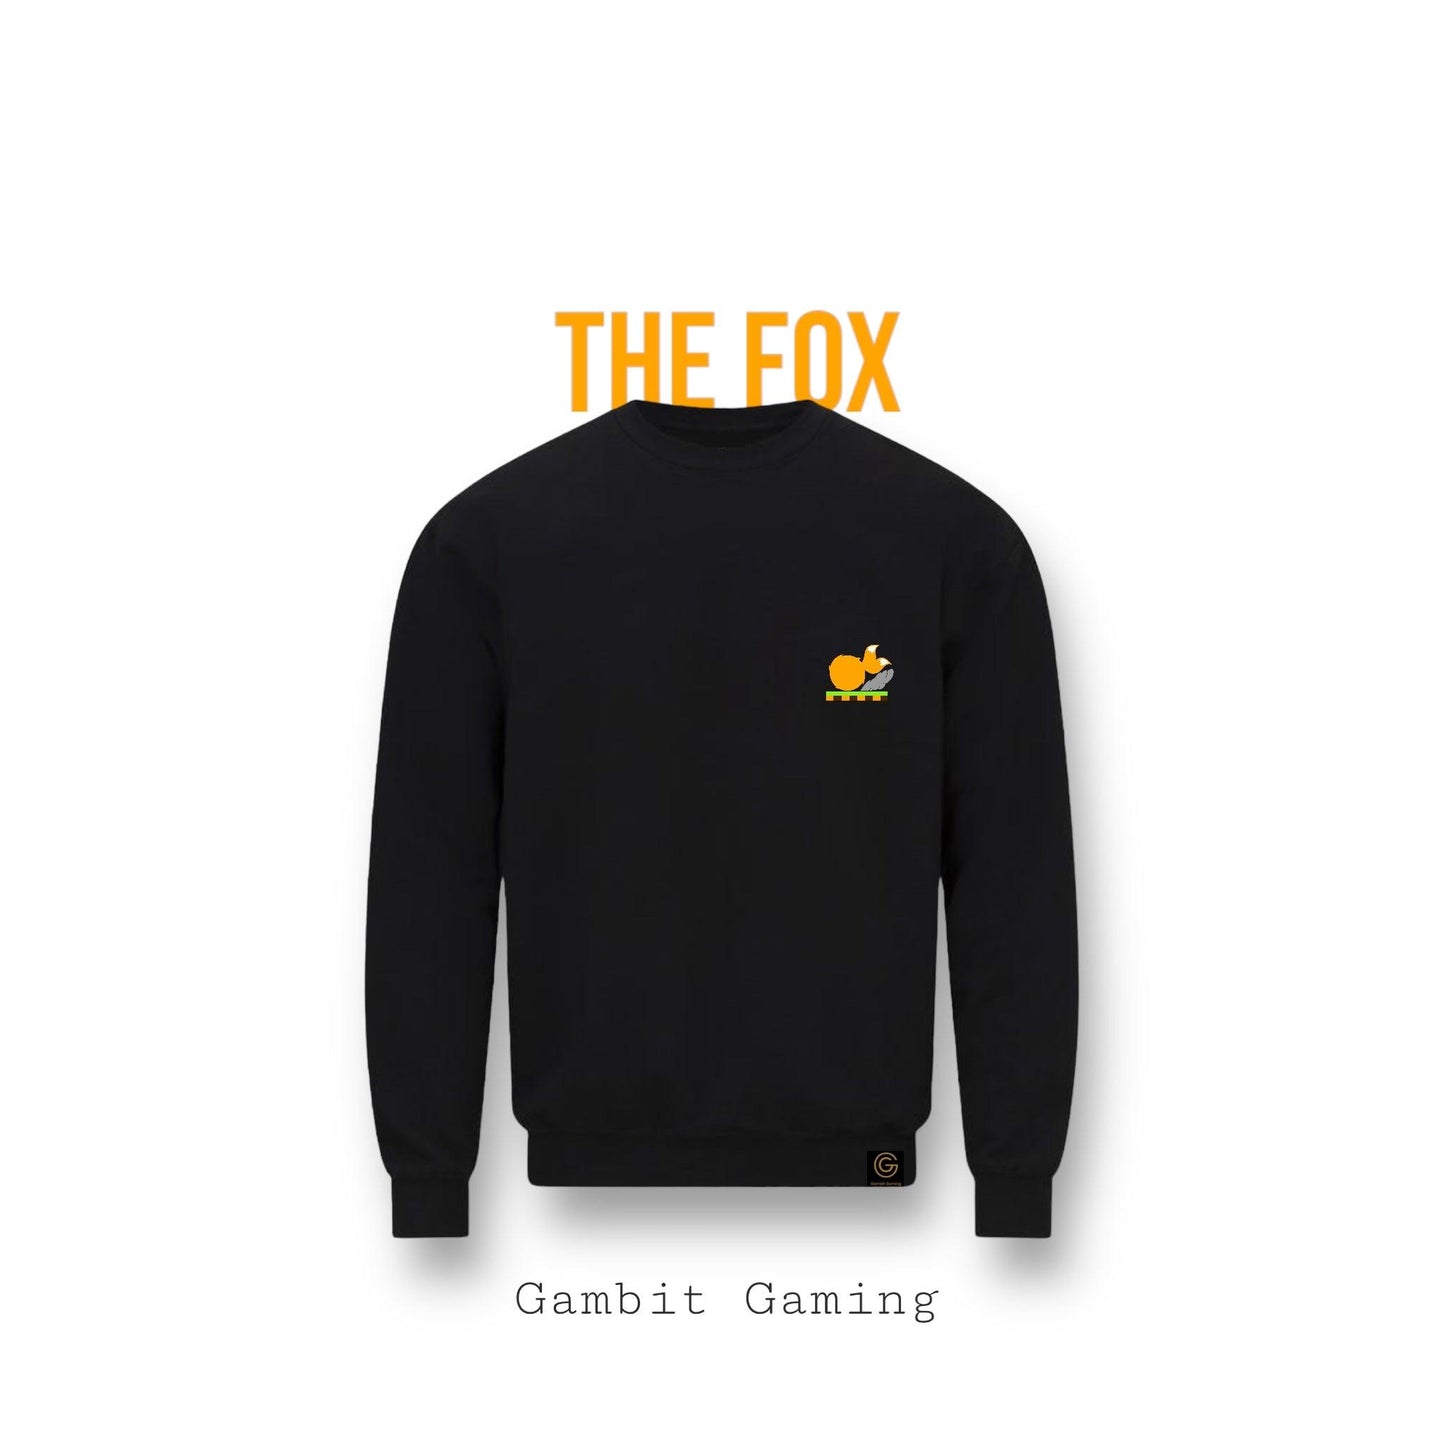 The Fox Sweater - Gambit Gaming